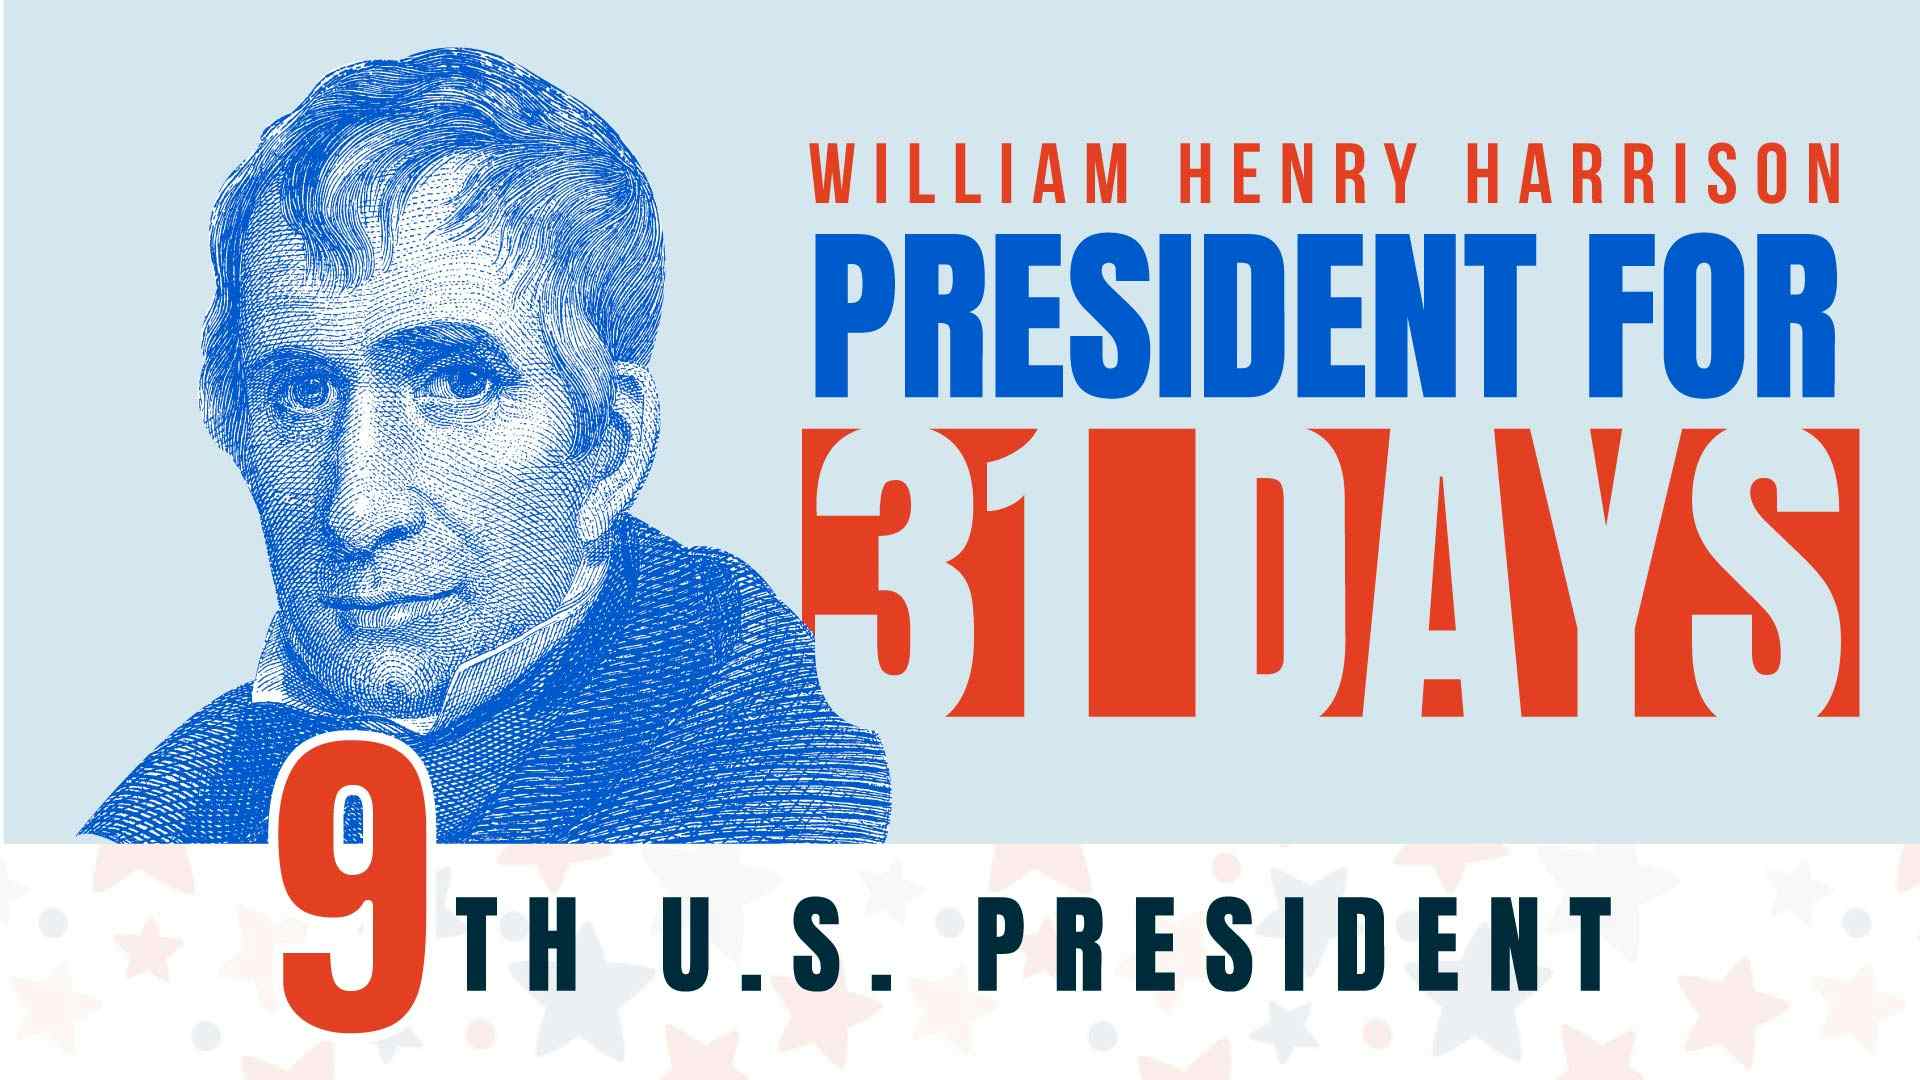 William Henry Harrison: President for 31 Days